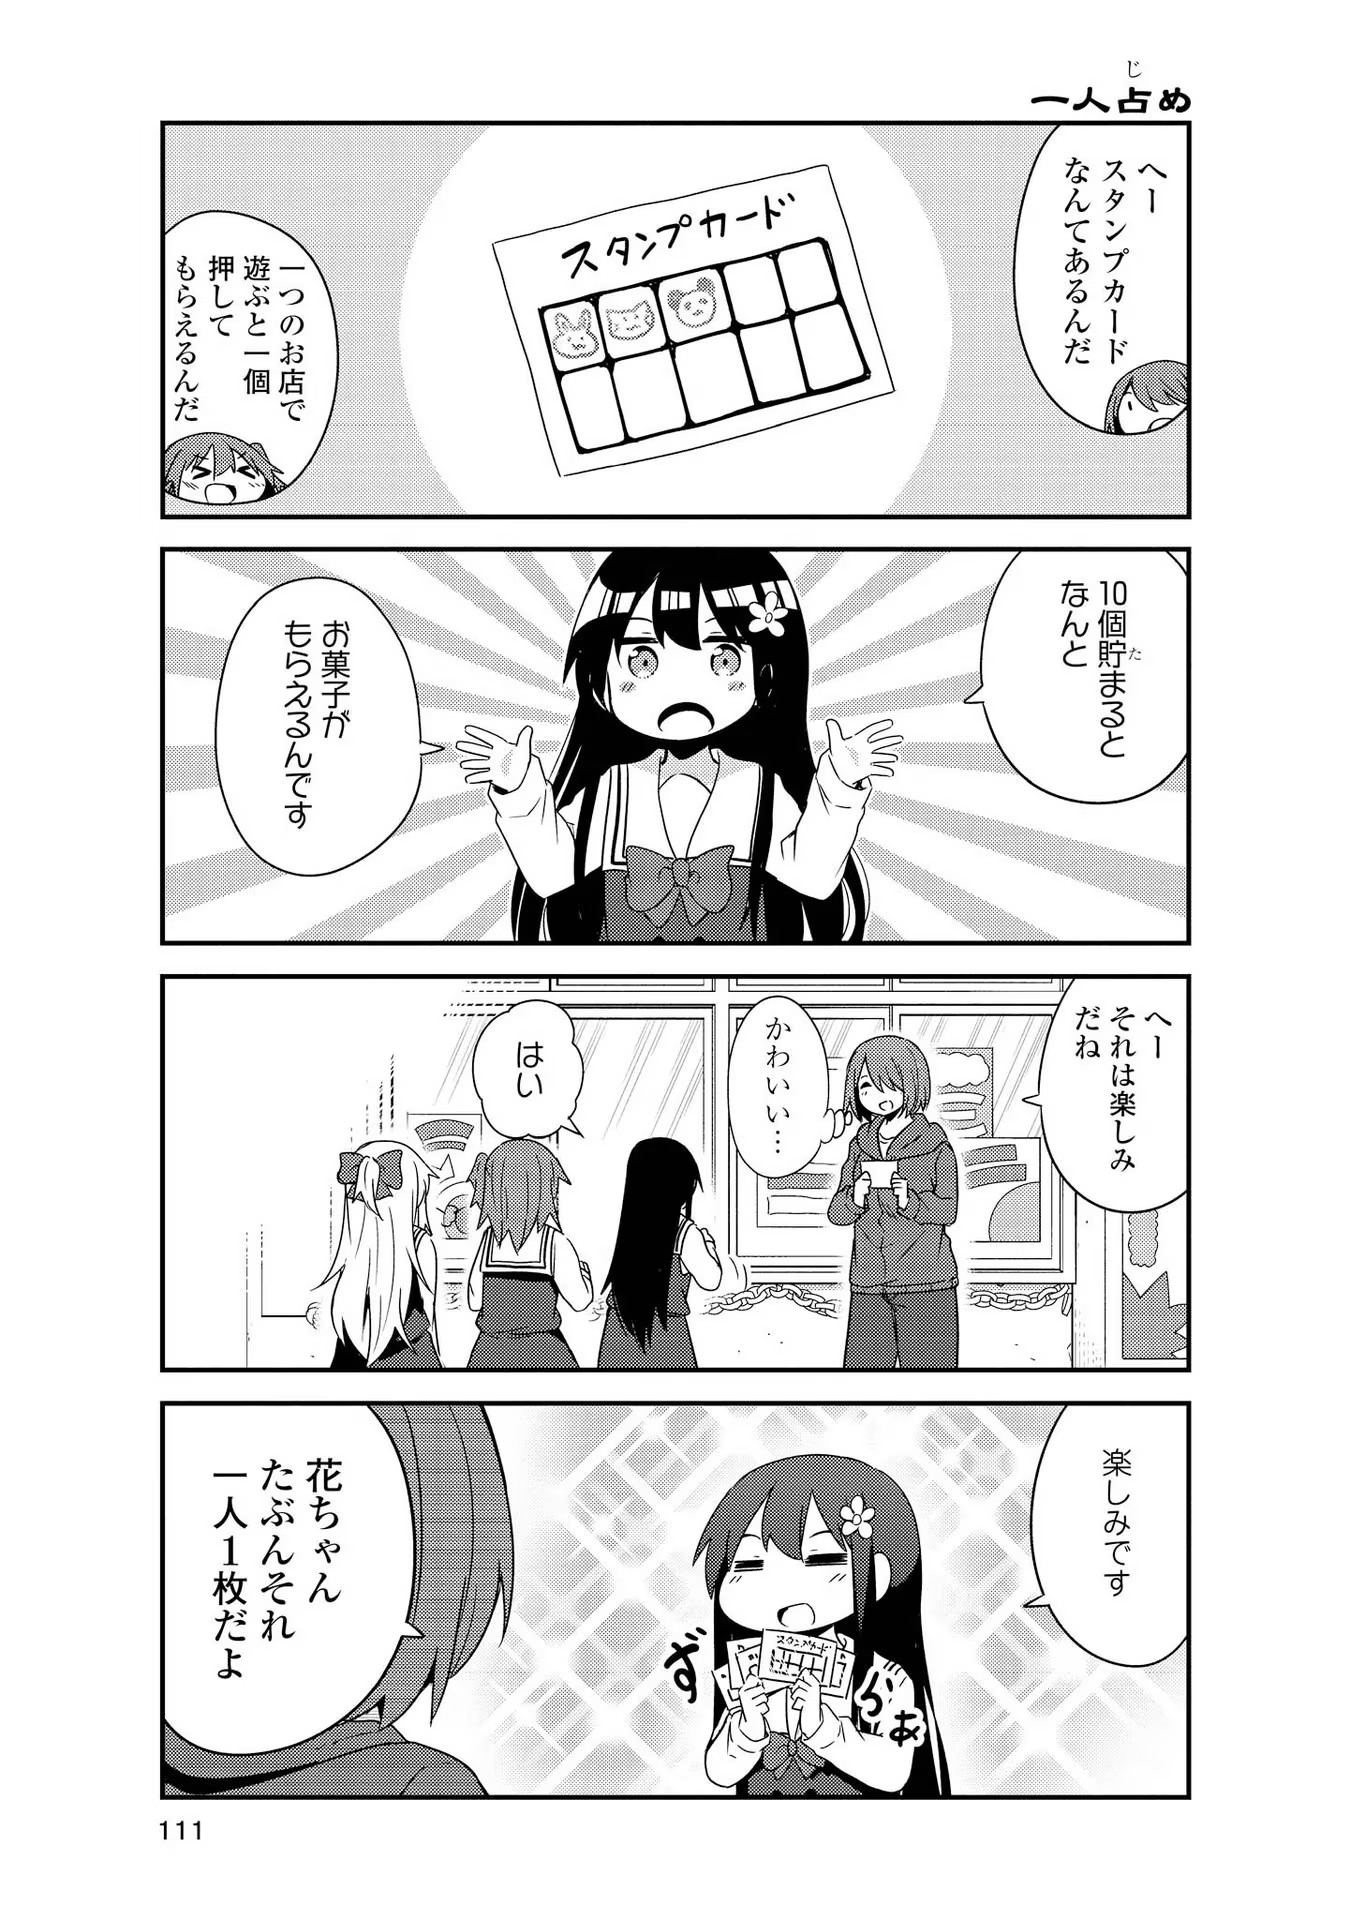 Watashi ni Tenshi ga Maiorita! - Chapter 35 - Page 5